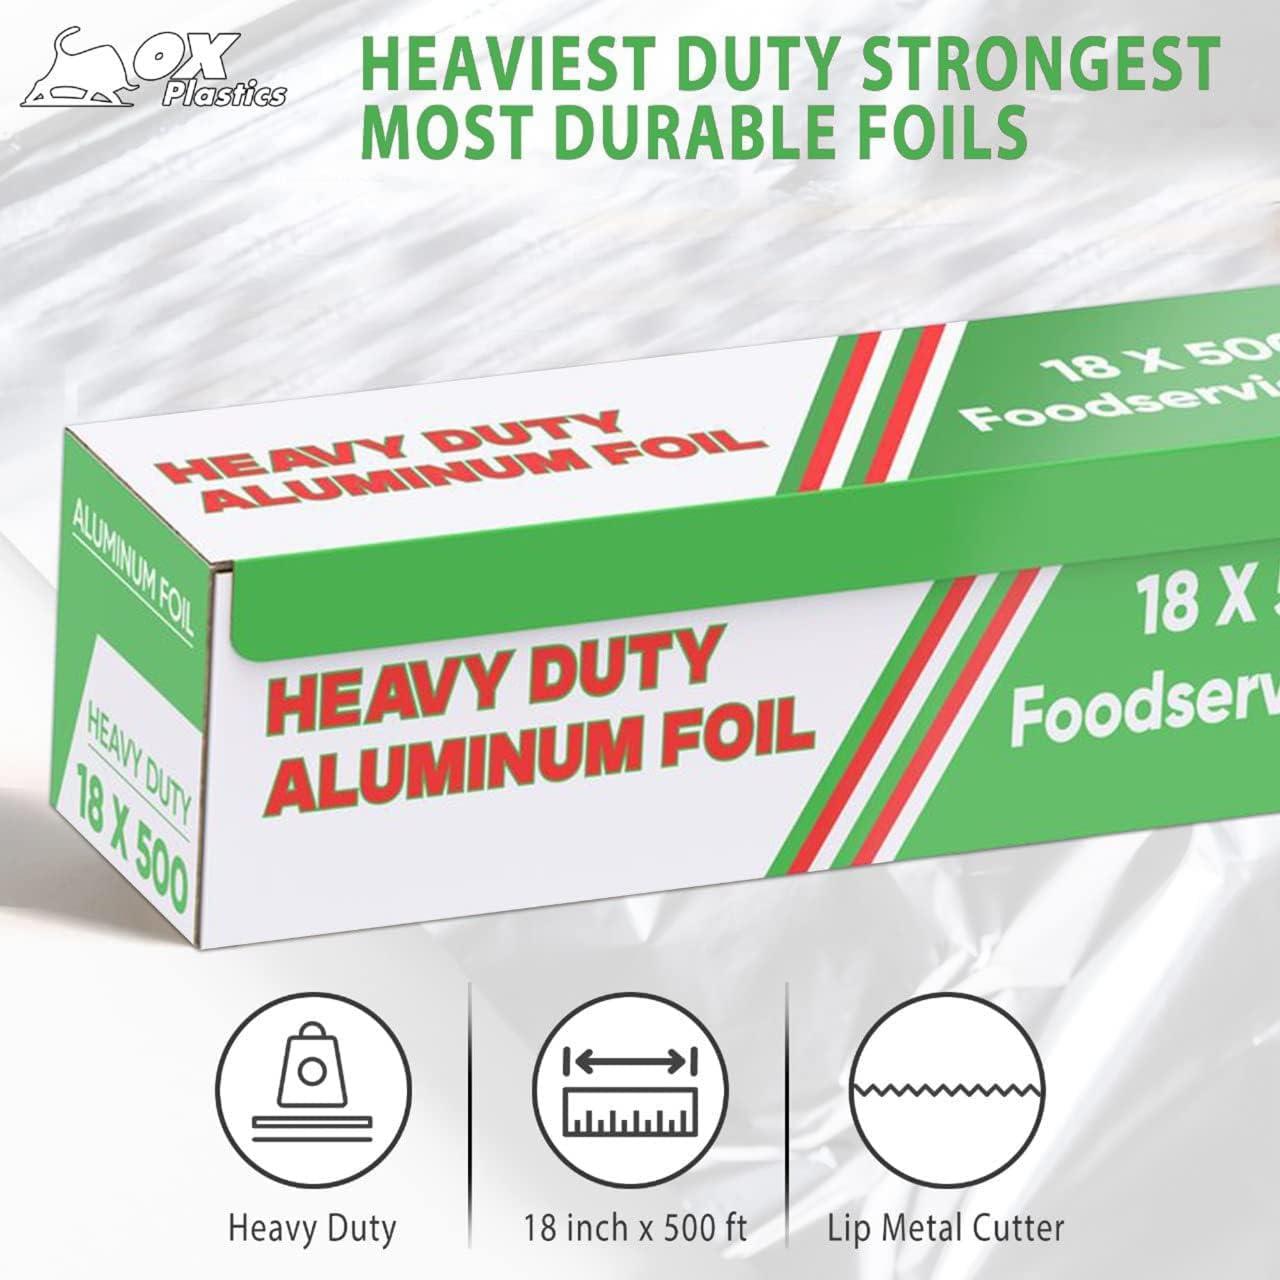 FOIL/ Heavy Duty Aluminum Foil, 18 x 500'-Food Service